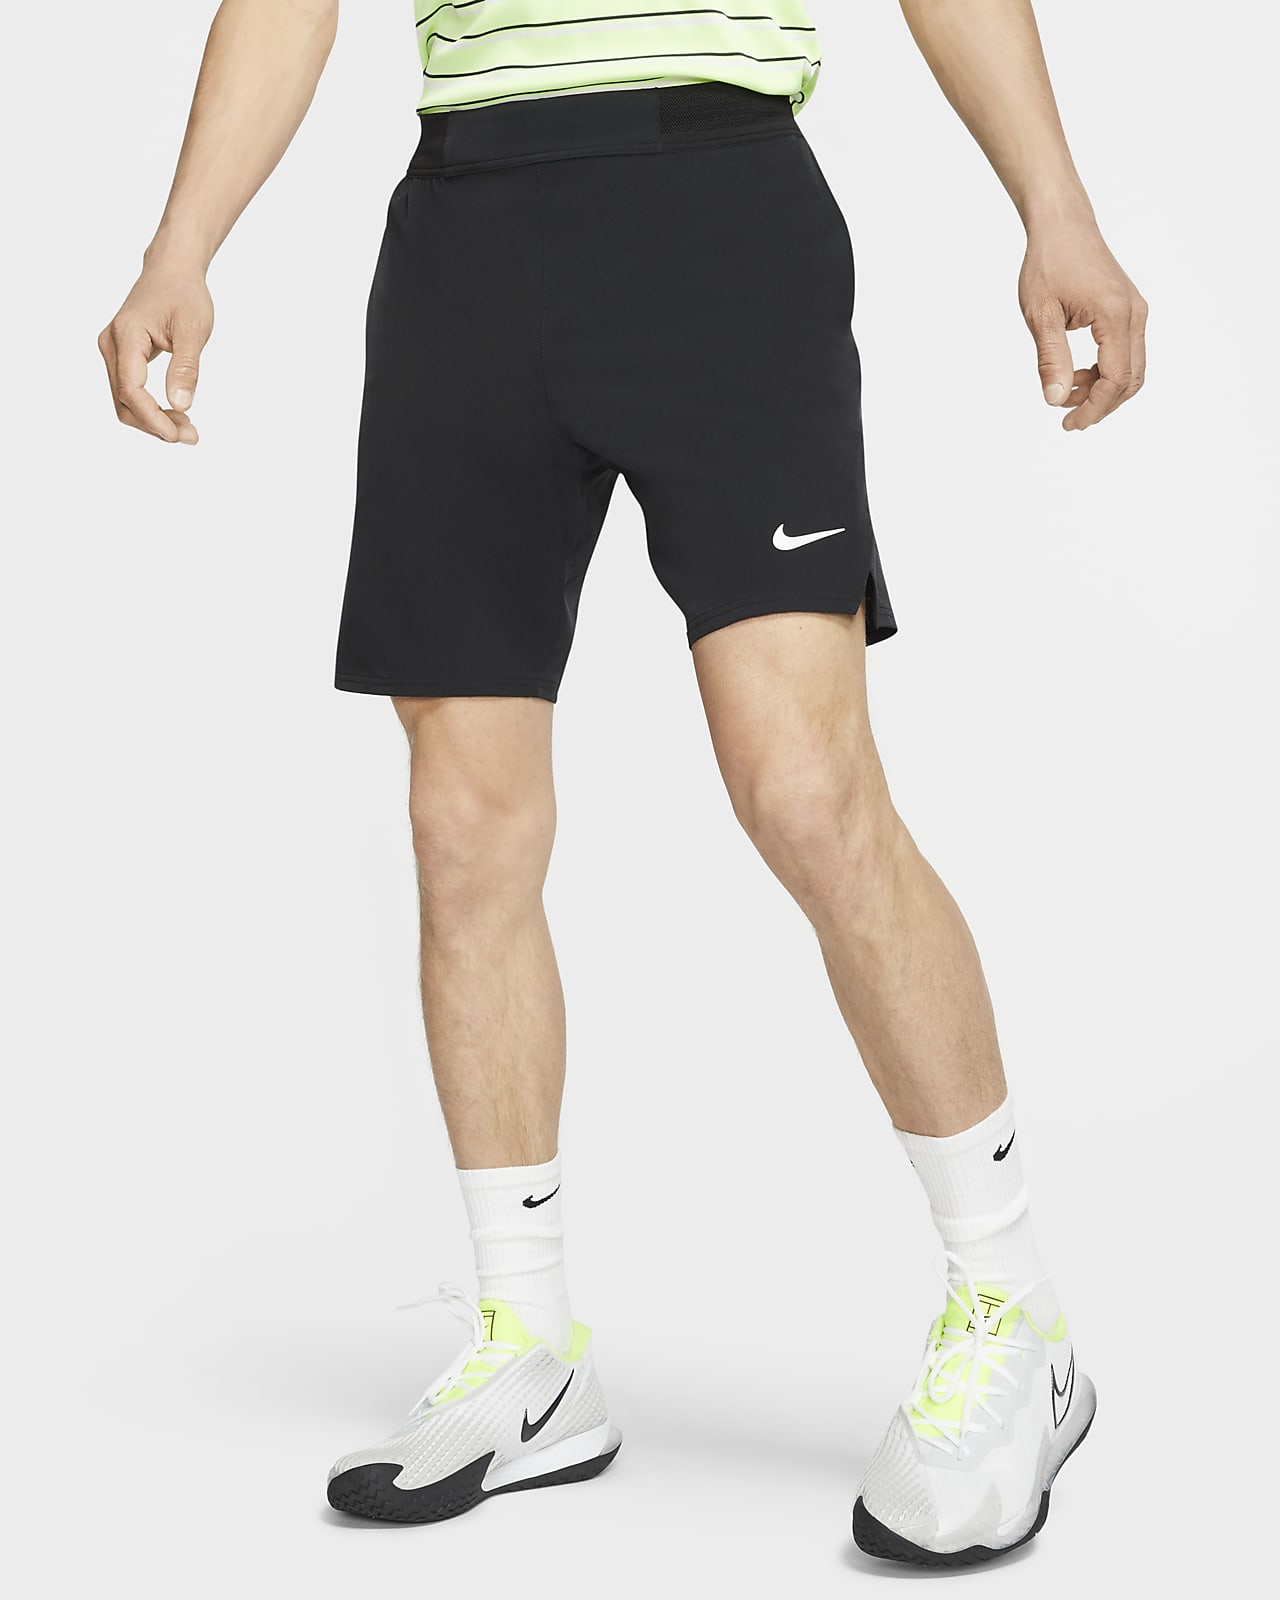 NikeCourt Flex Ace Men's 9"/23cm Tennis Shorts